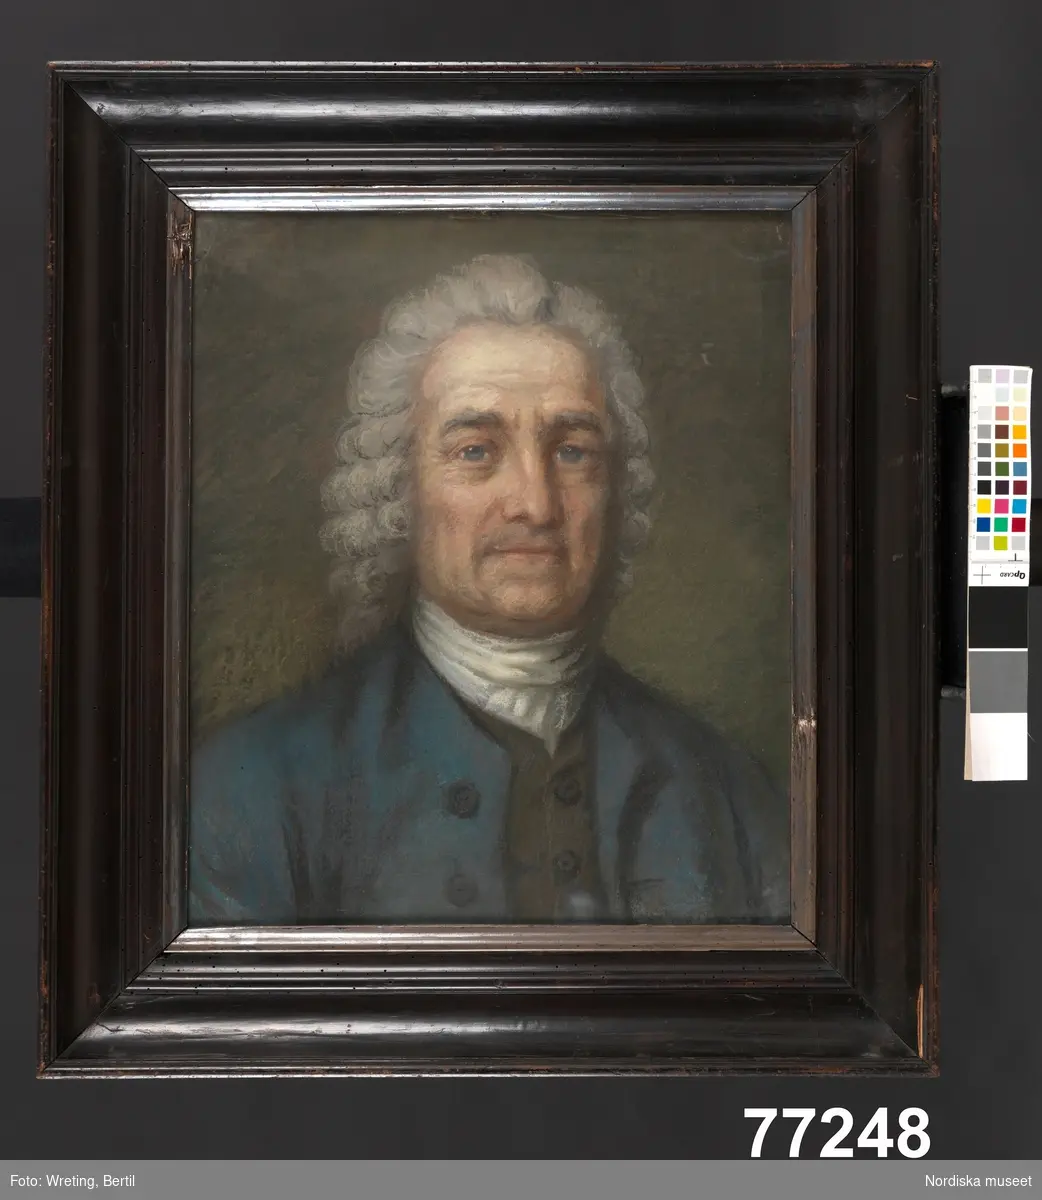 Herrporträtt, bröstbild. Porträtt av äldre man, en face, i grå lockig peruk, vit halsduk och blå rock.